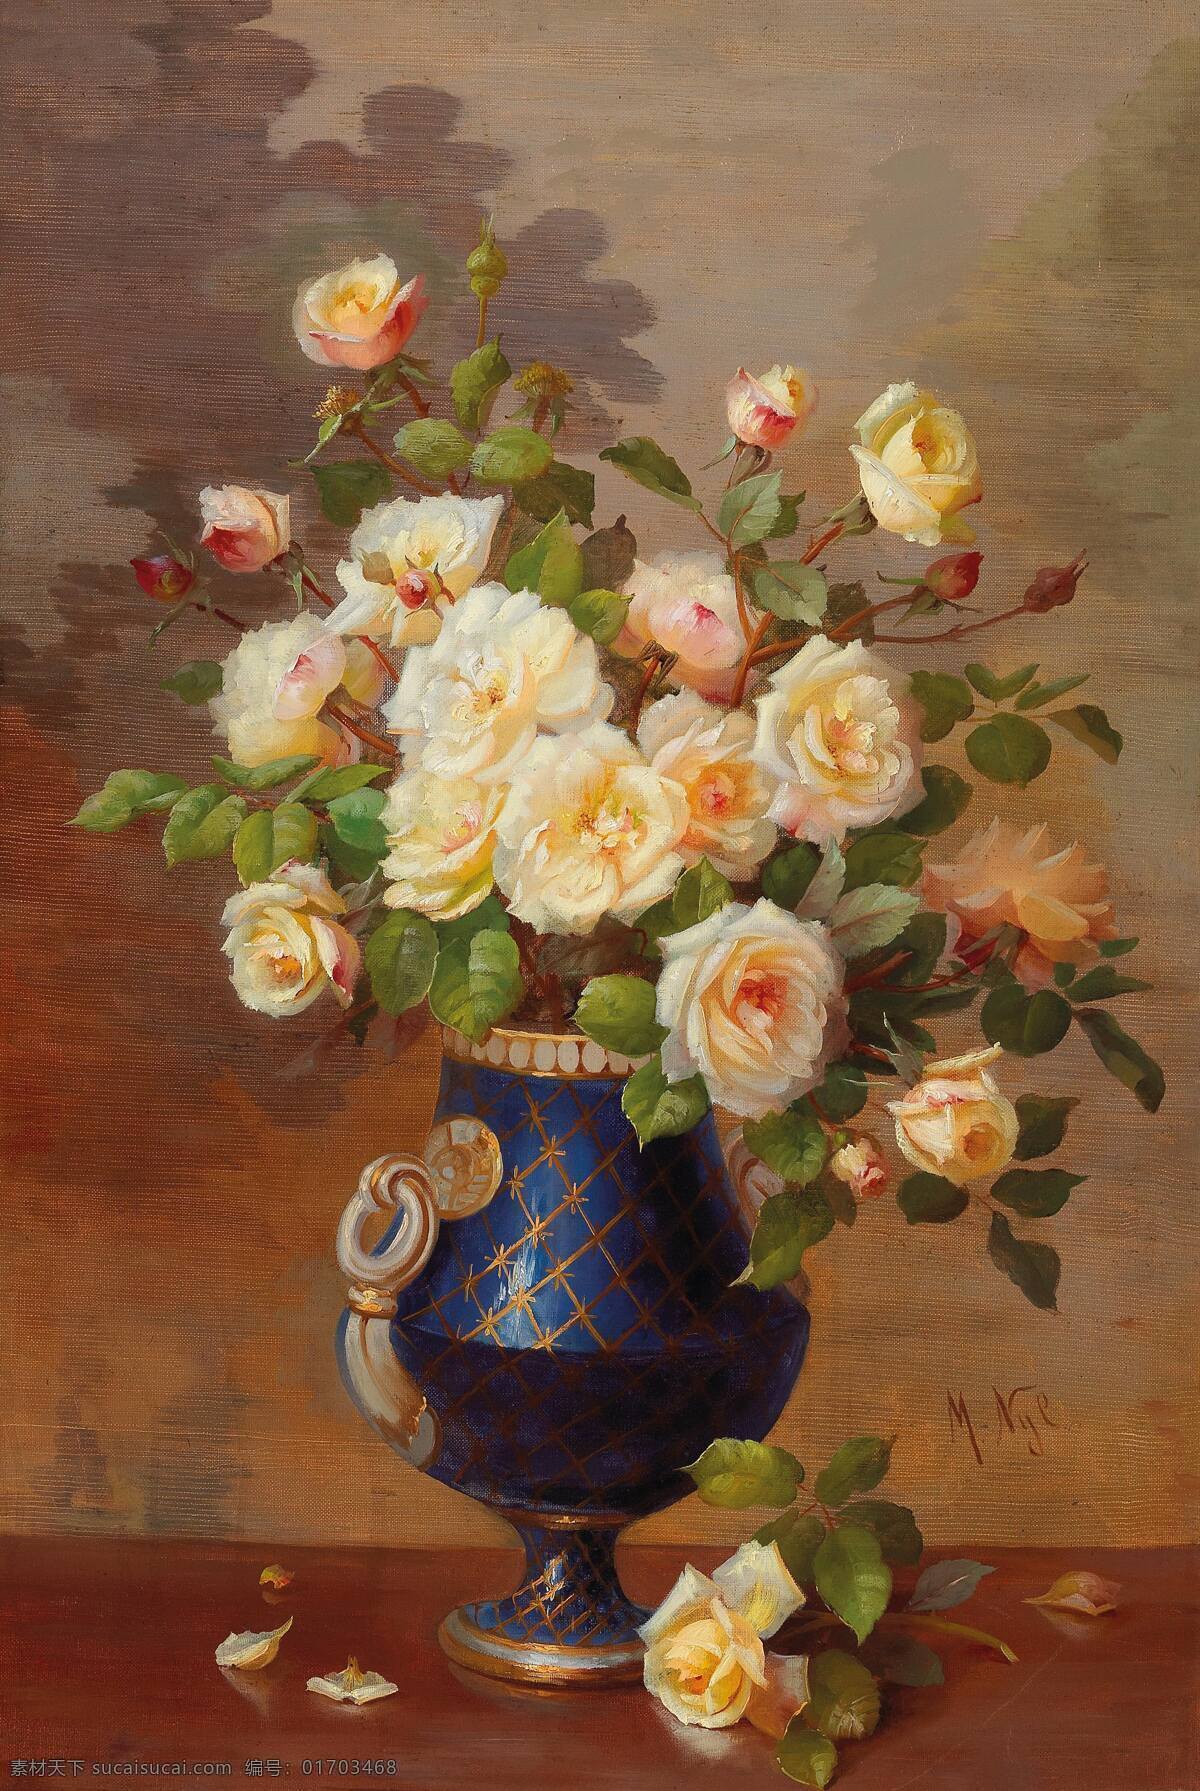 玛丽183 尼罗183 弗罗施作品 奥地利画家 花瓶里 黄玫瑰 静物花卉 散落 19世纪油画 油画 文化艺术 绘画书法